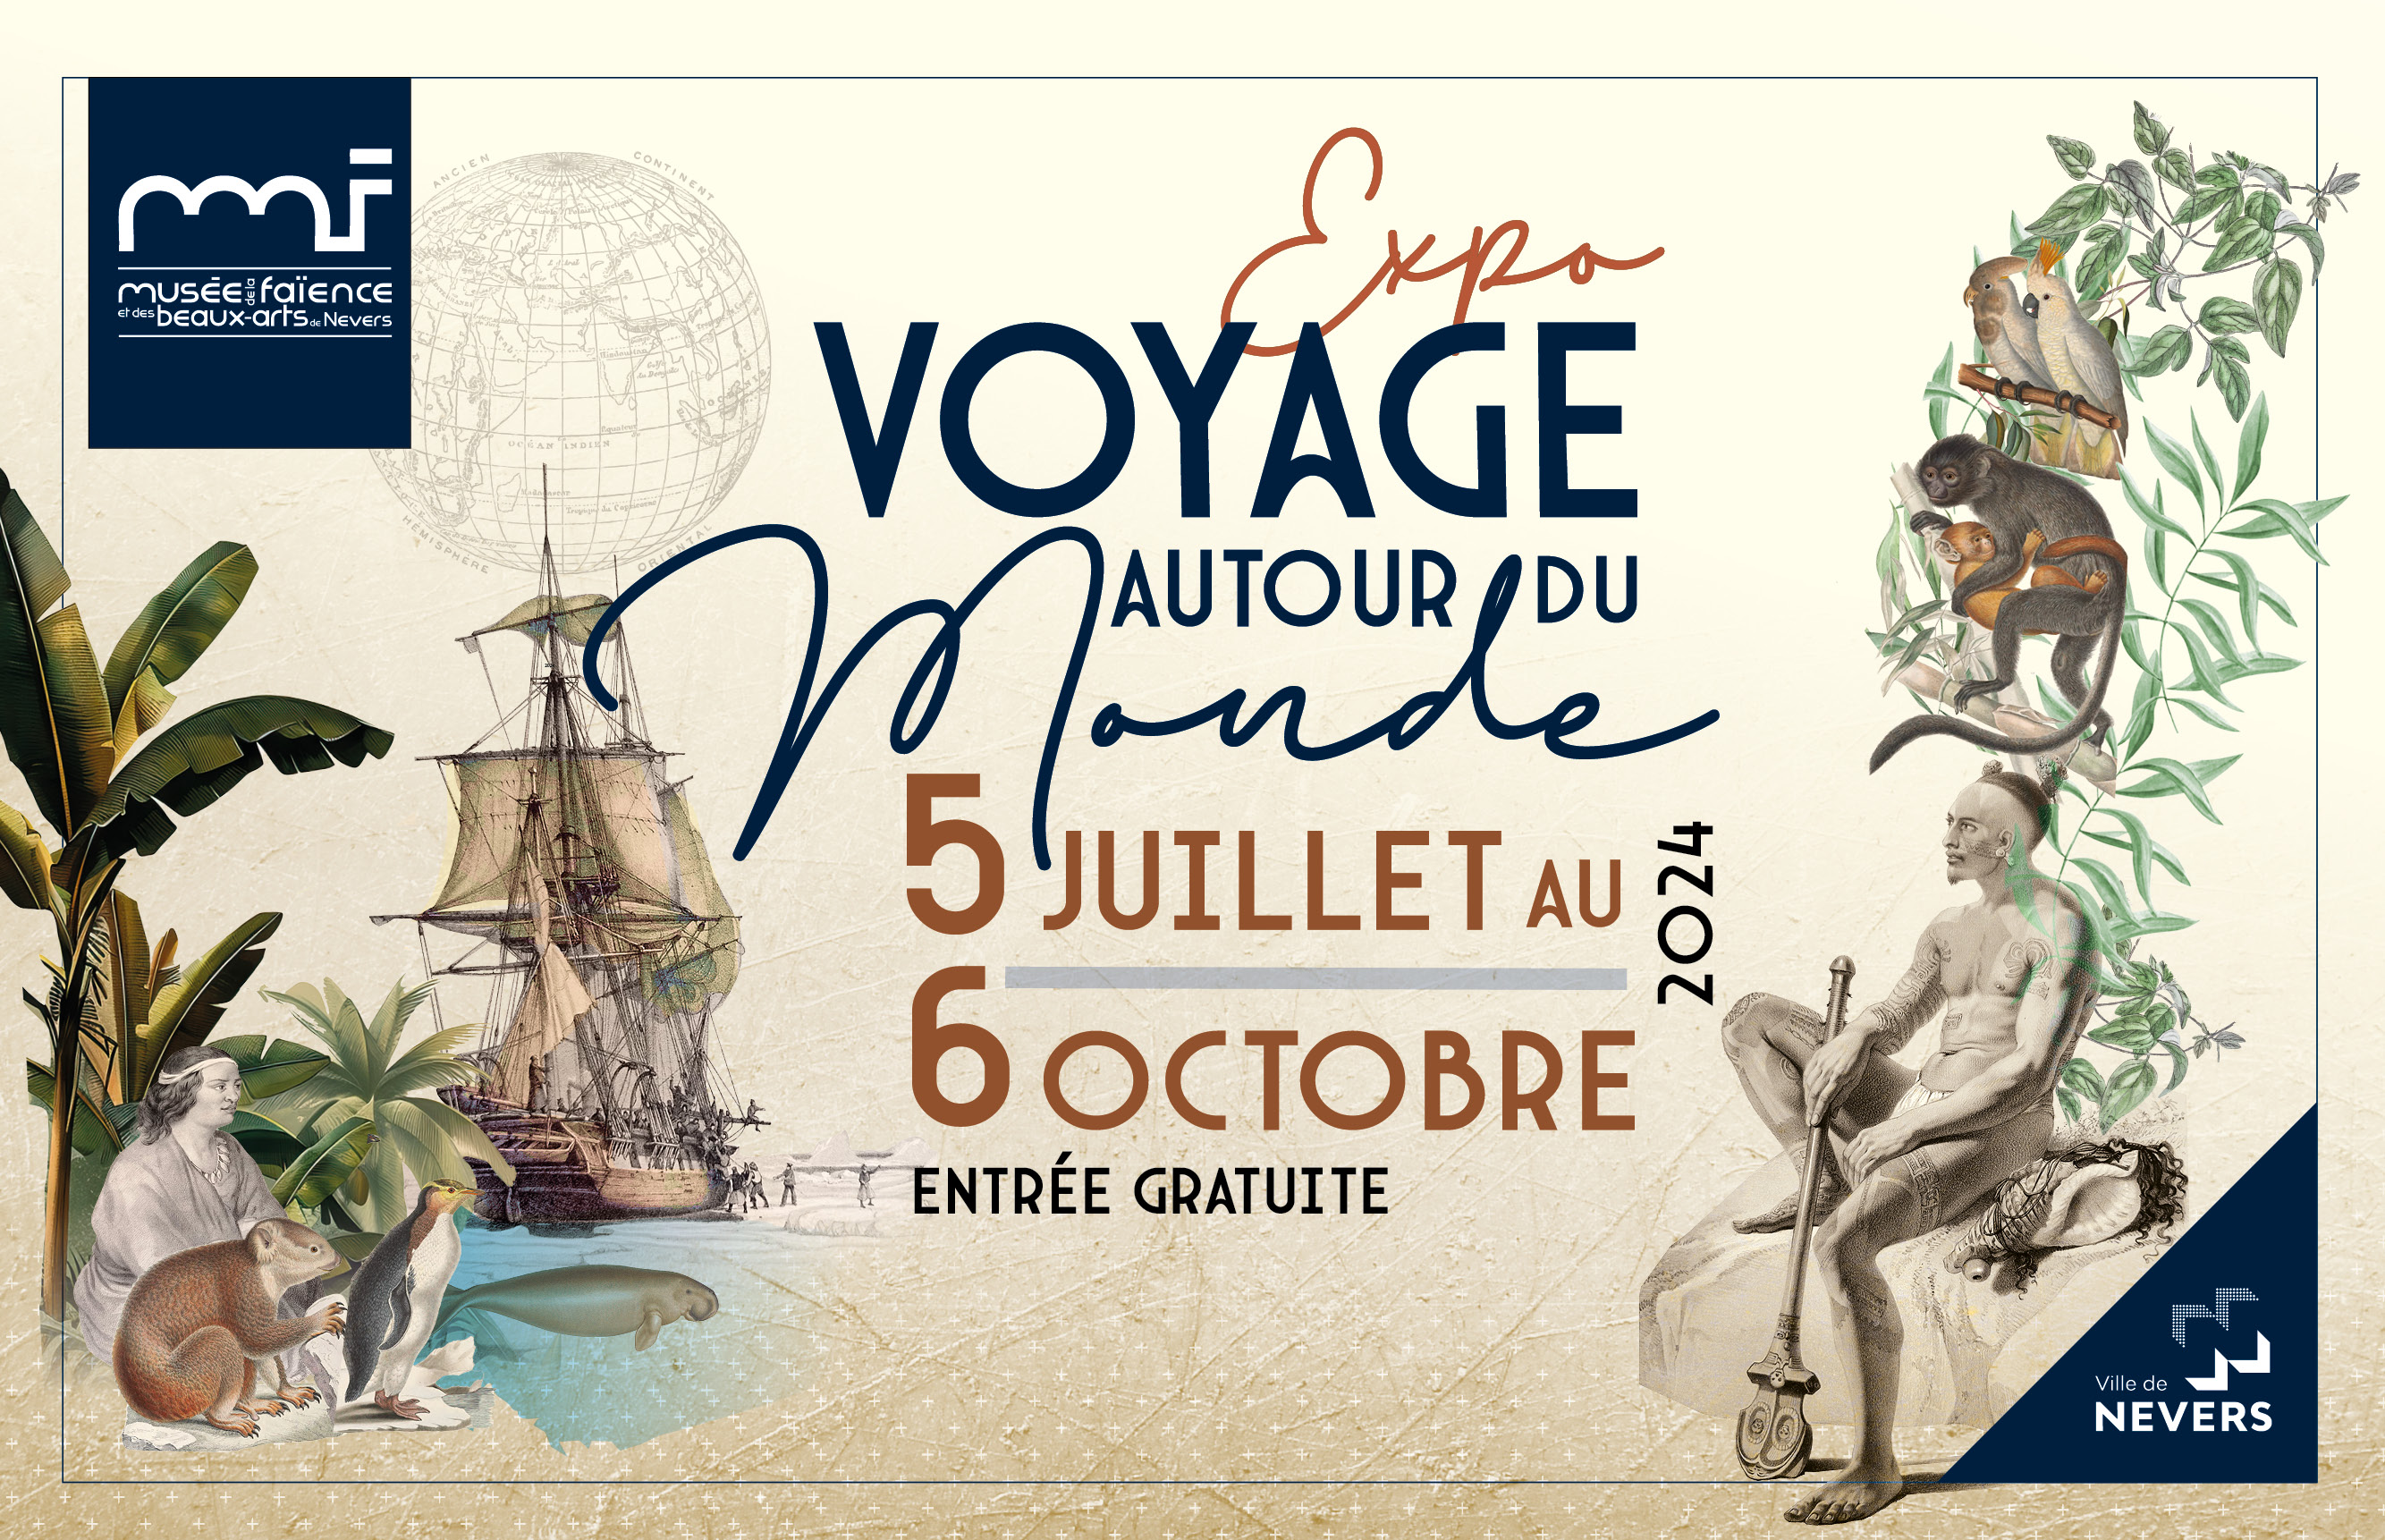 Exposition "Voyage autour du monde", du 5 juillet au 6 octobre au Musée de la Faïence et des Beaux-Arts de Nevers